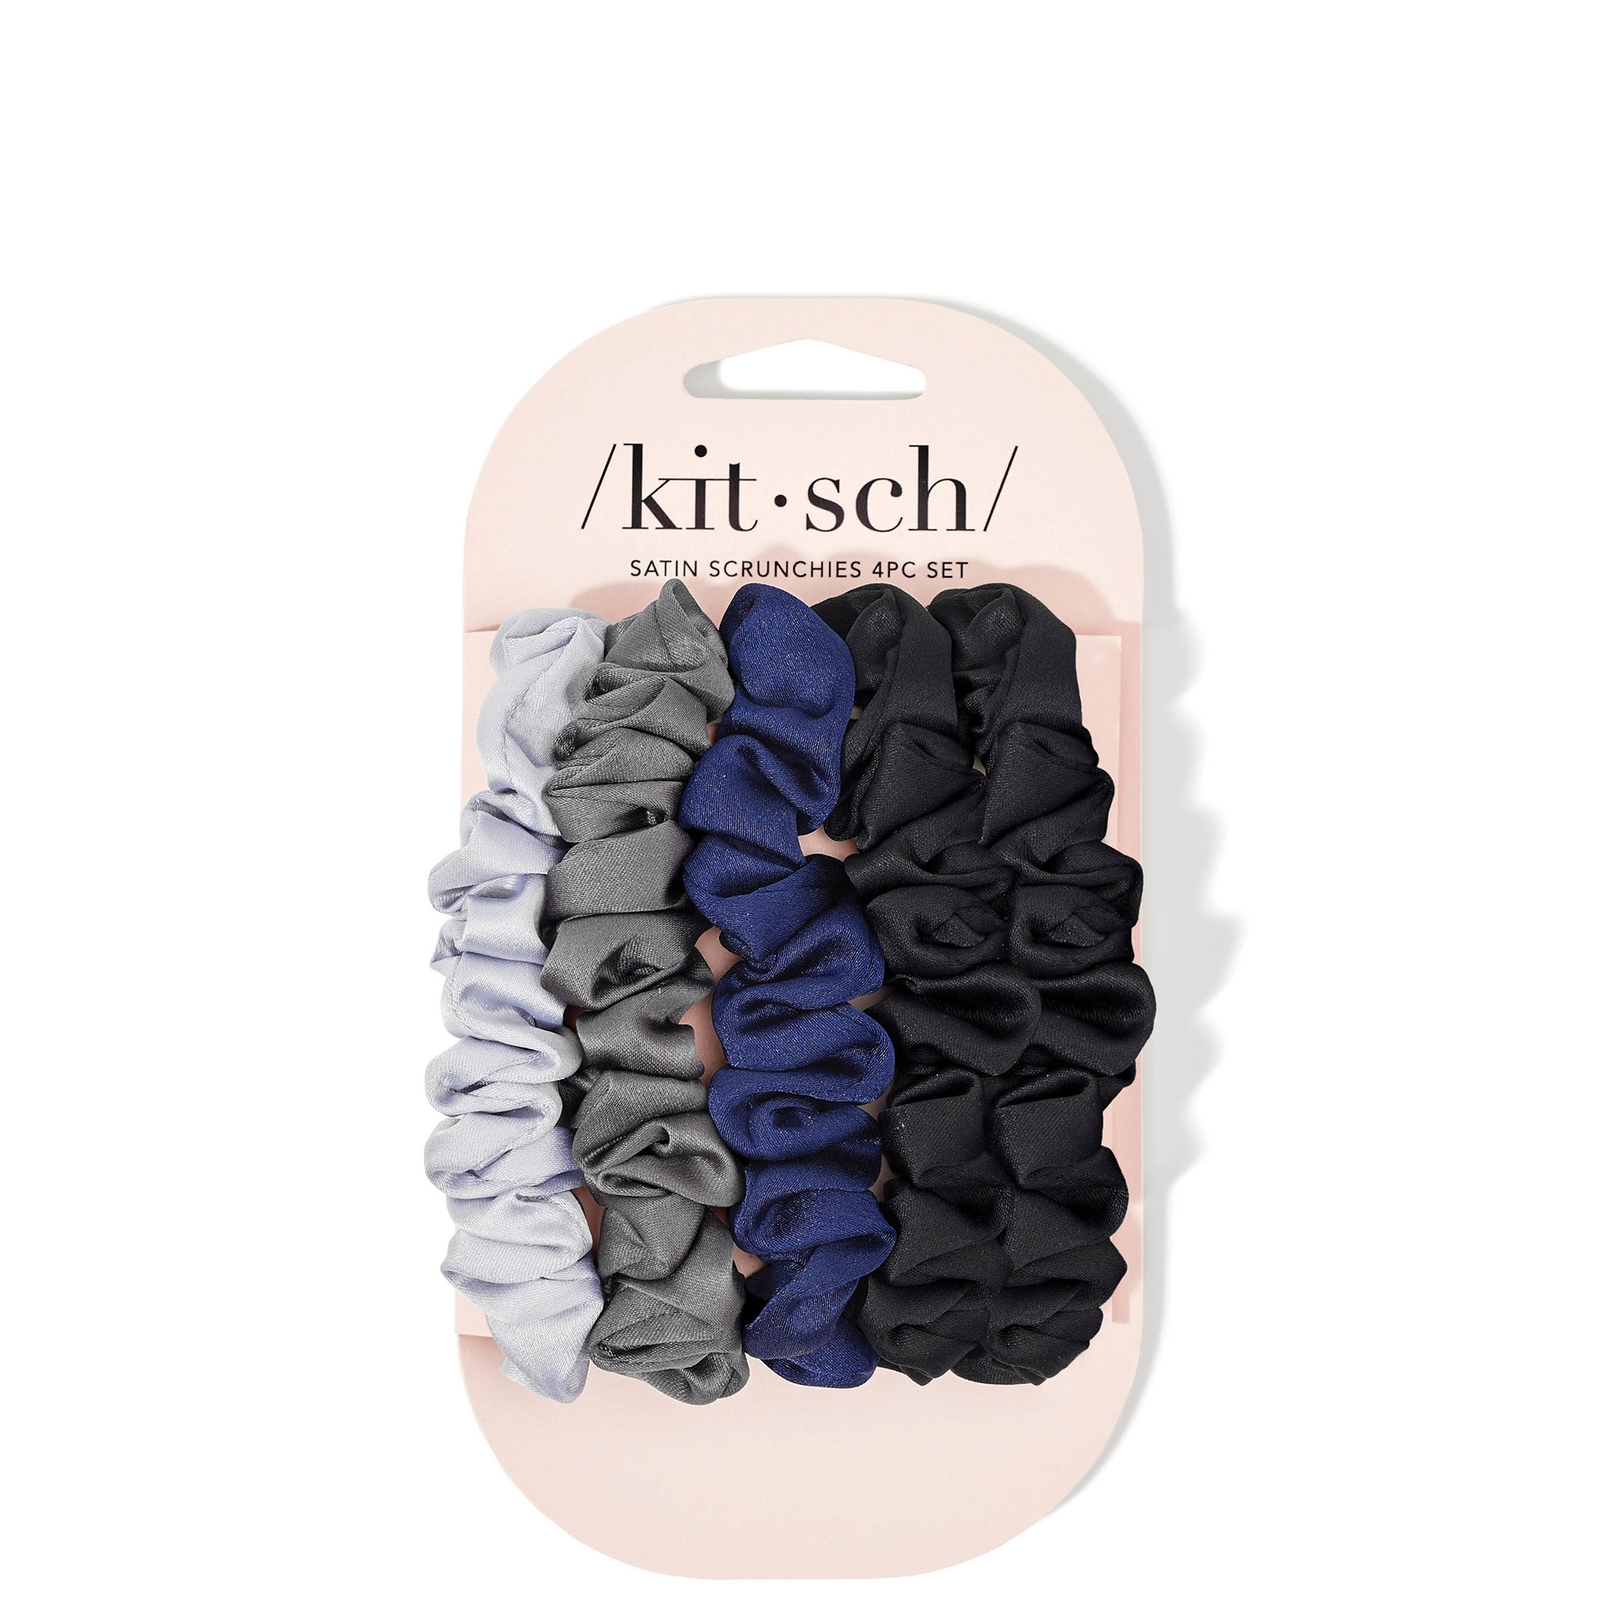 Kitsch Satin Petite Scrunchies 5 Piece Set - Midnight